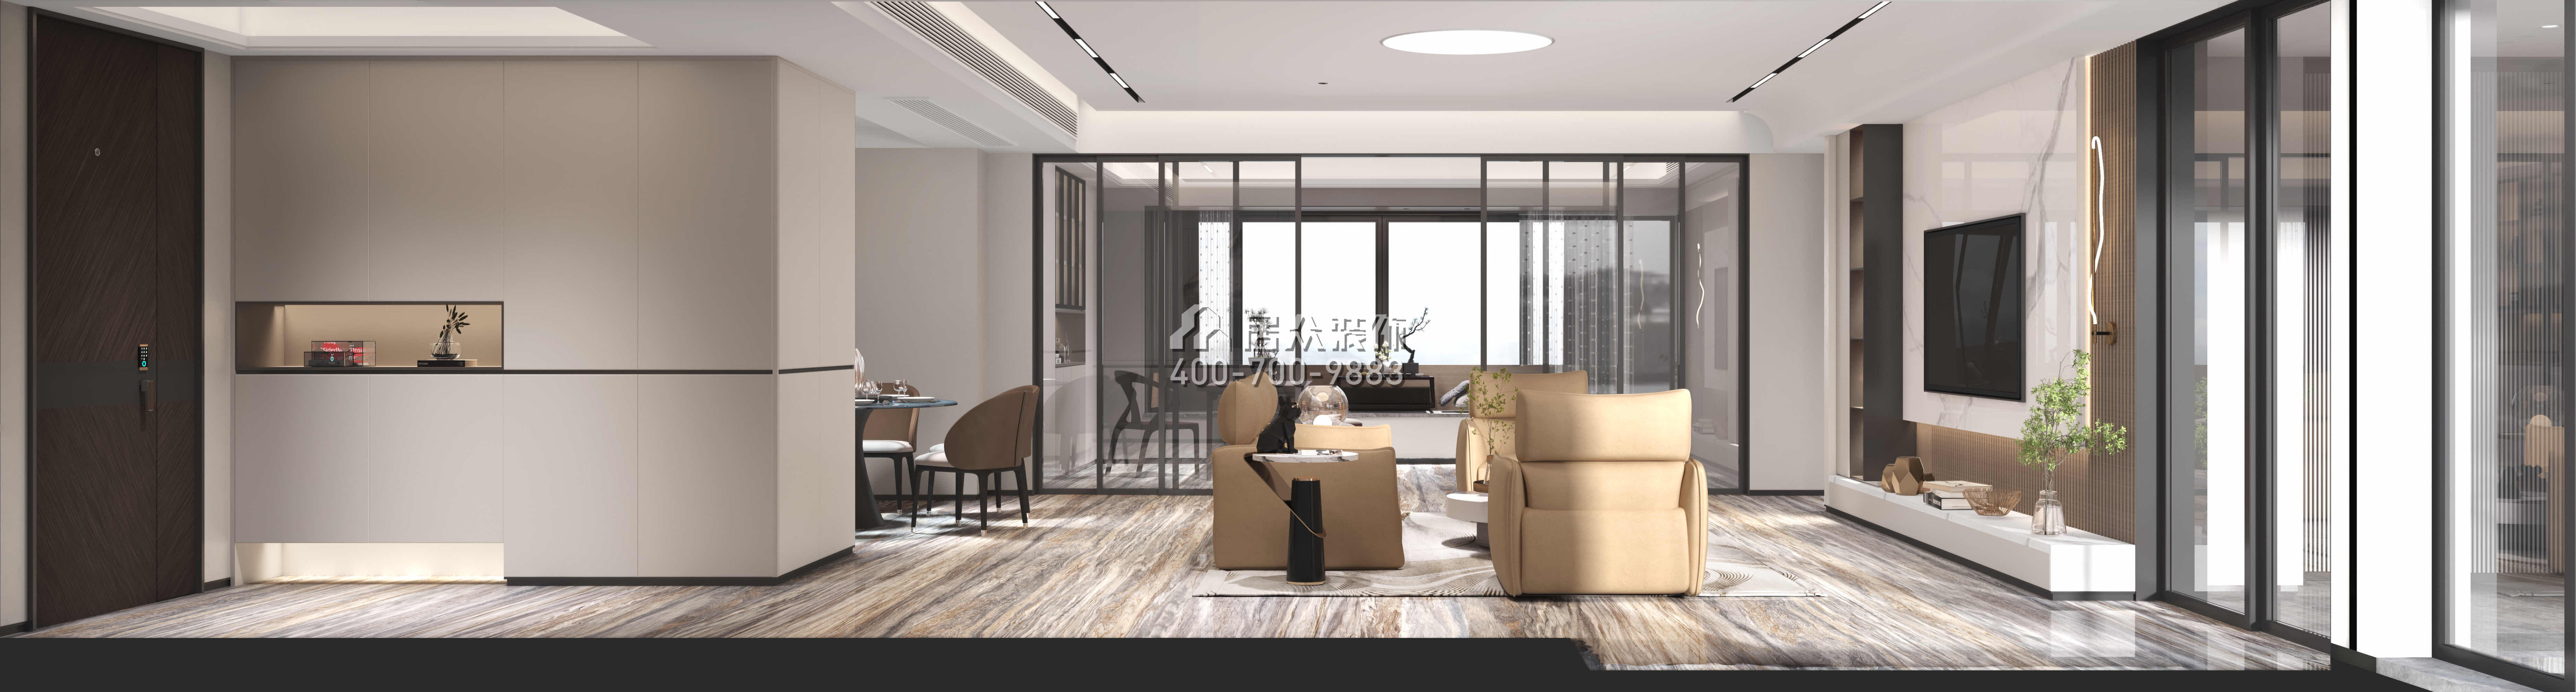 錦繡花園一期200平方米現代簡約風格平層戶型客廳裝修效果圖